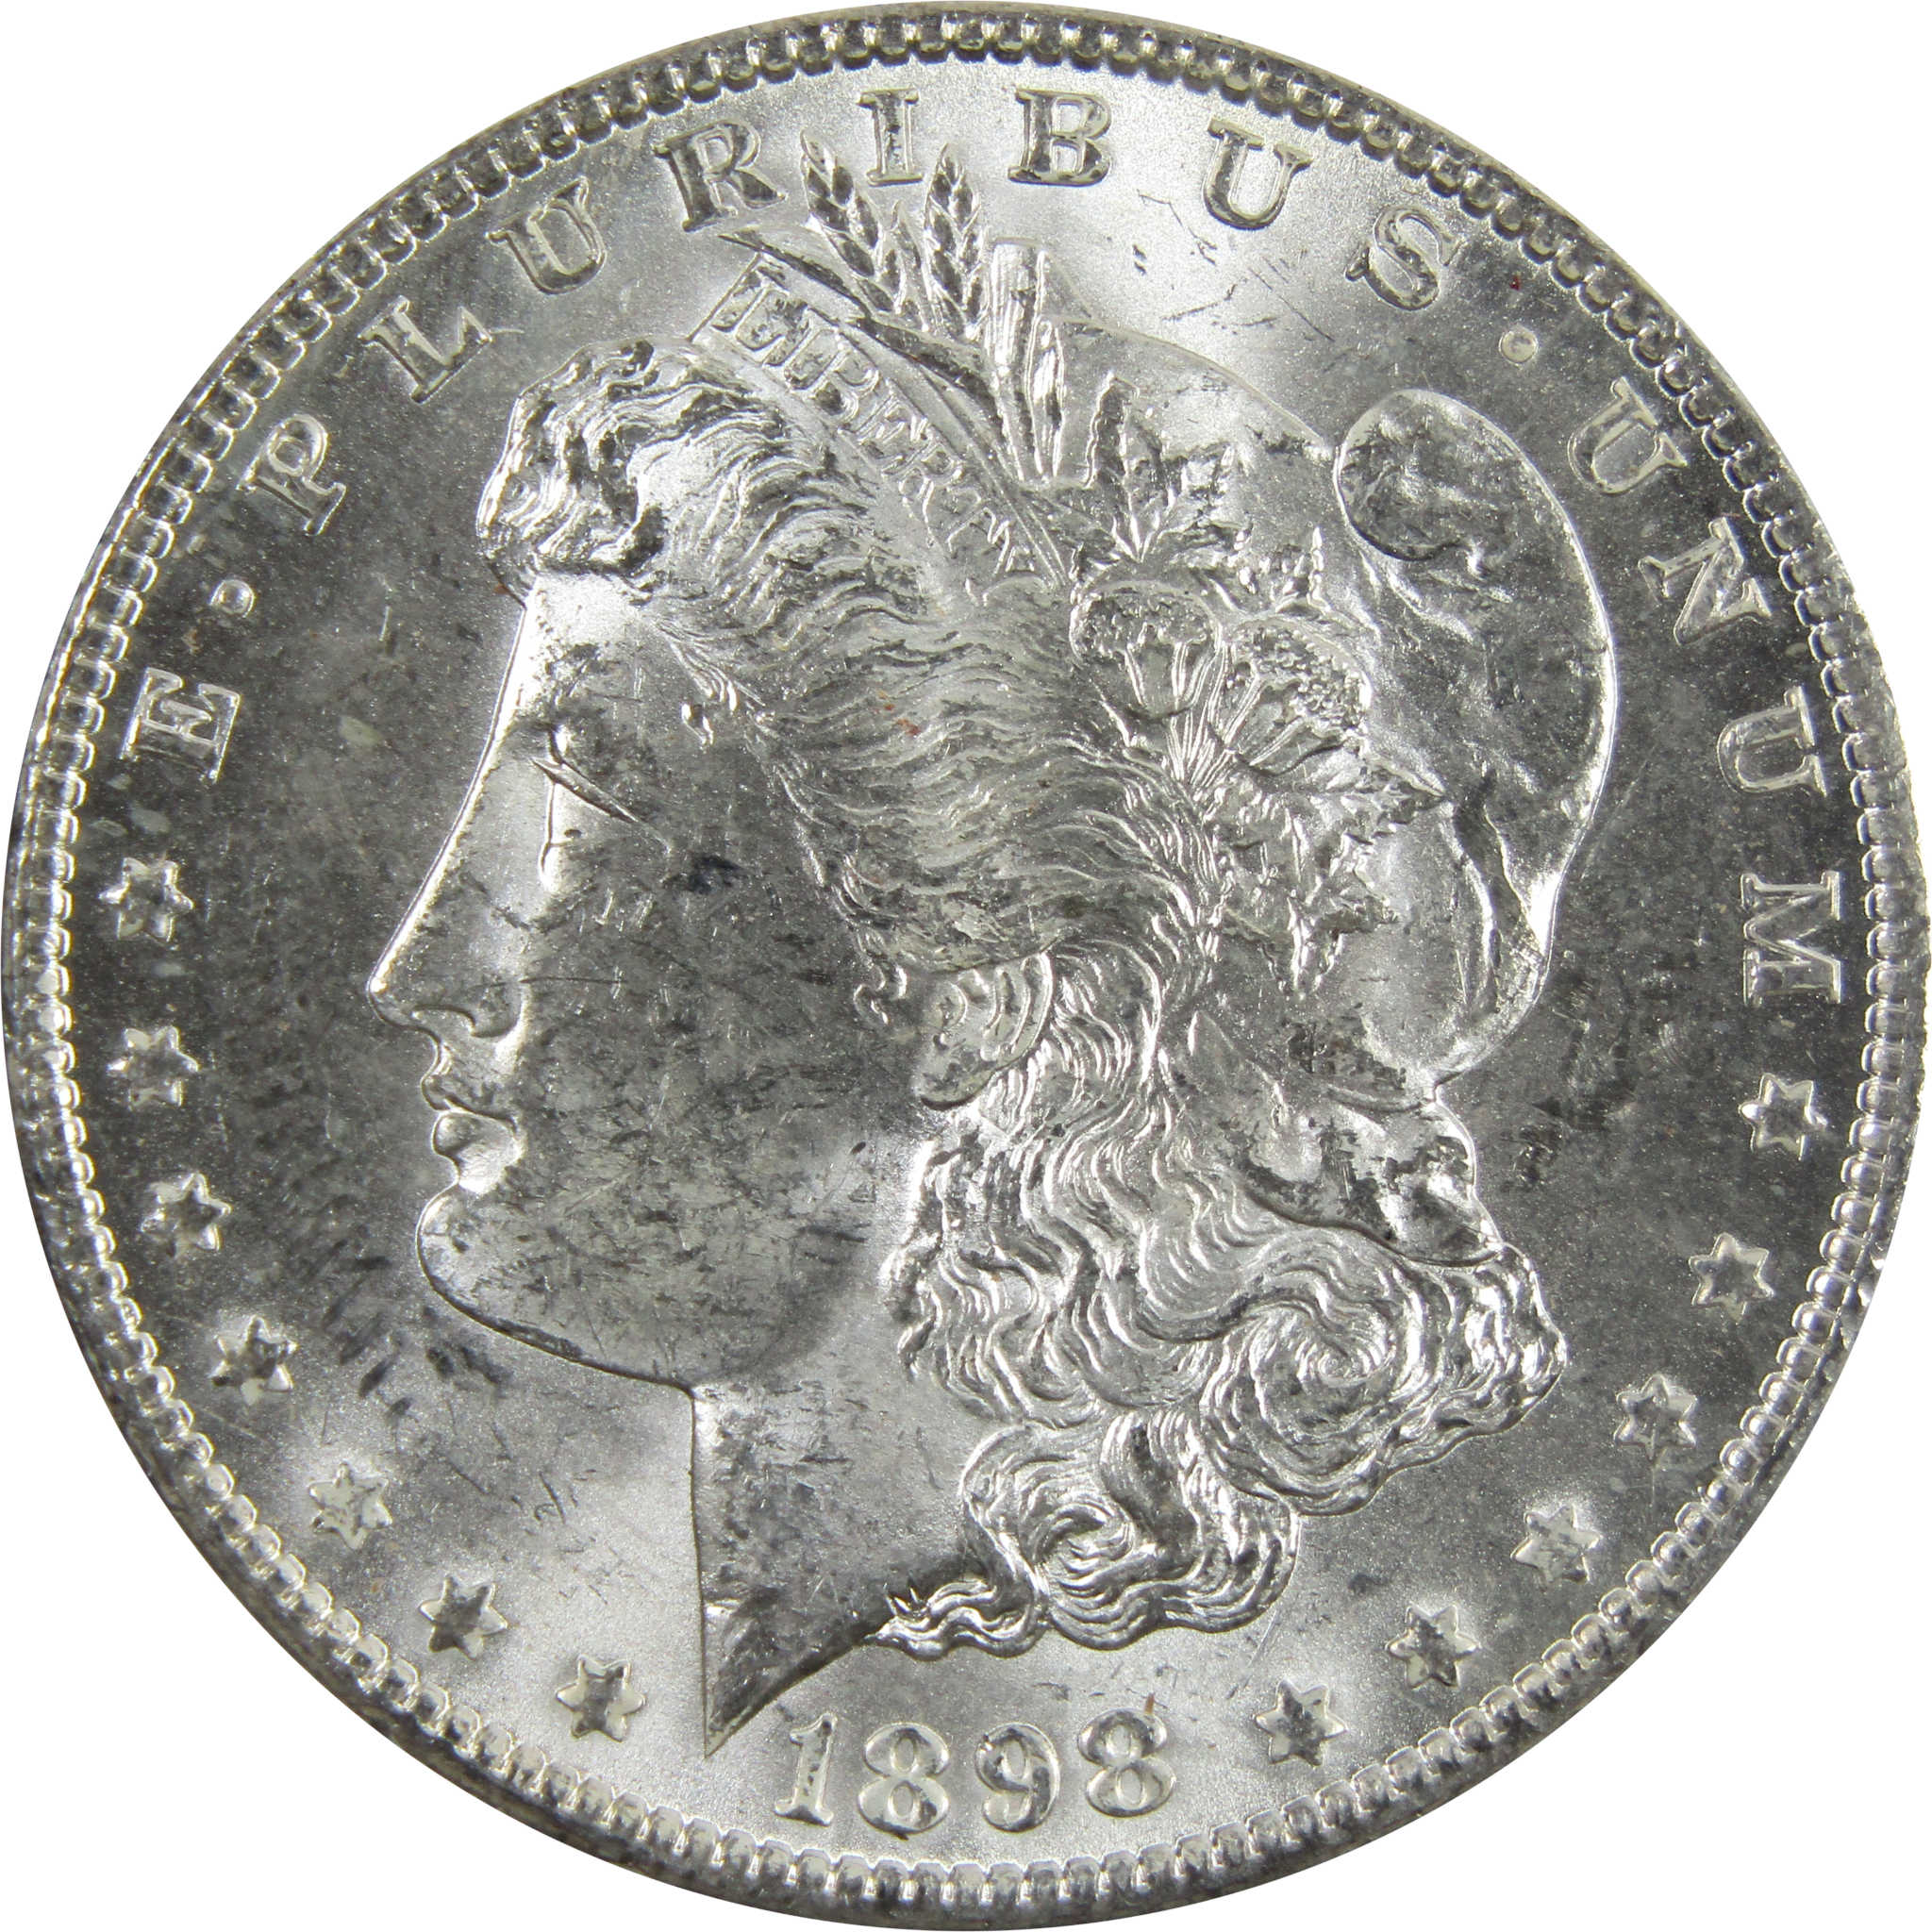 1898 O Morgan Dollar BU Uncirculated 90% Silver $1 Coin SKU:I5201 - Morgan coin - Morgan silver dollar - Morgan silver dollar for sale - Profile Coins &amp; Collectibles